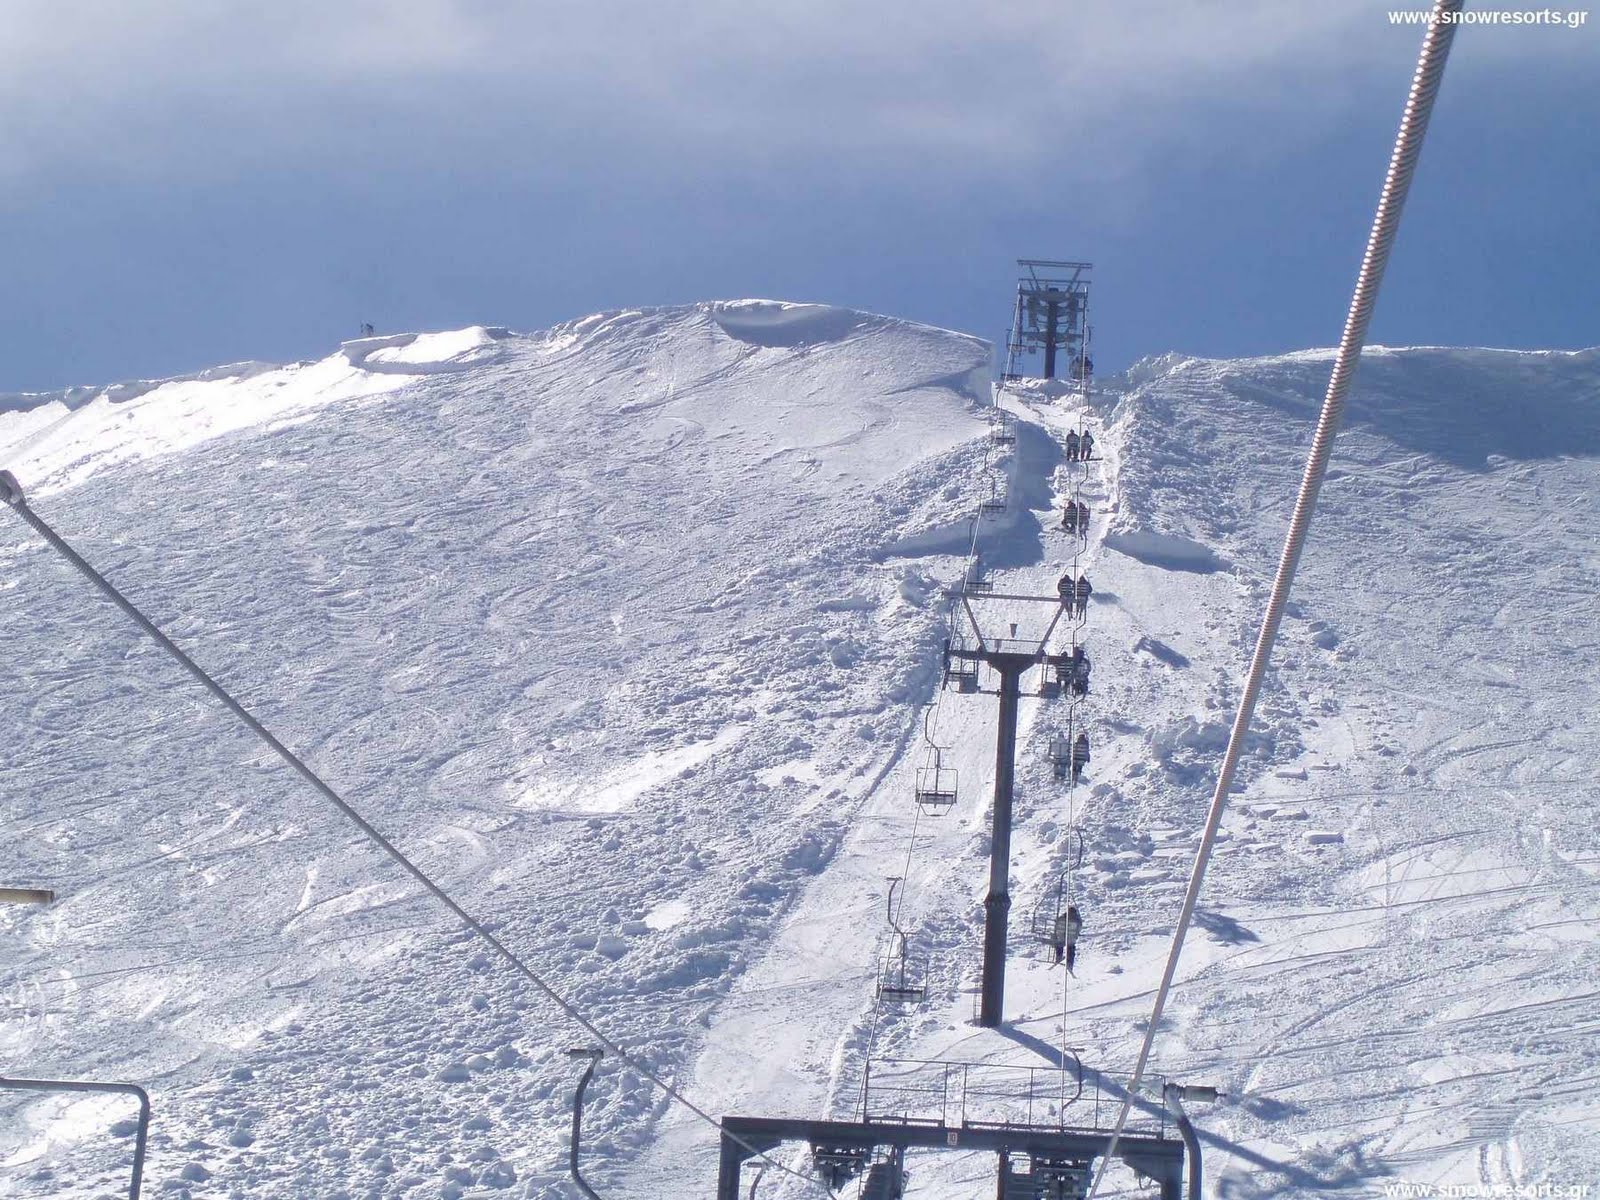 Χιονοστιβάδα στη Βασιλίτσα, αγωνία για 30χρονο που έκανε snowboard